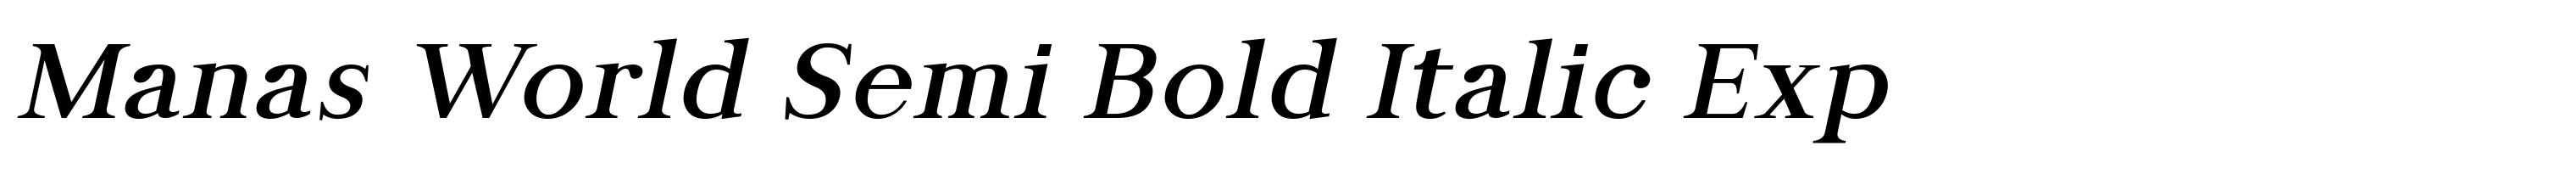 Manas World Semi Bold Italic Exp